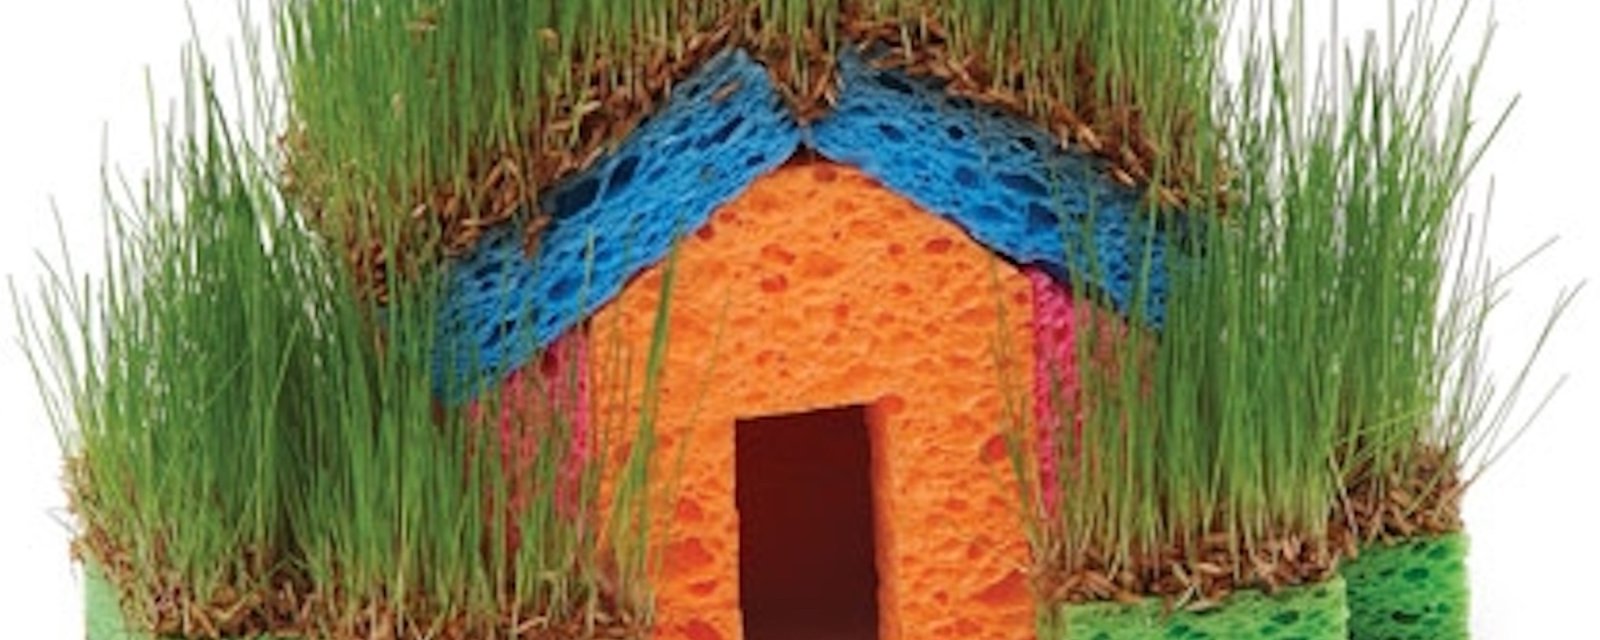 Un super projet printanier à réaliser avec les enfants: une maison en herbe fraiche